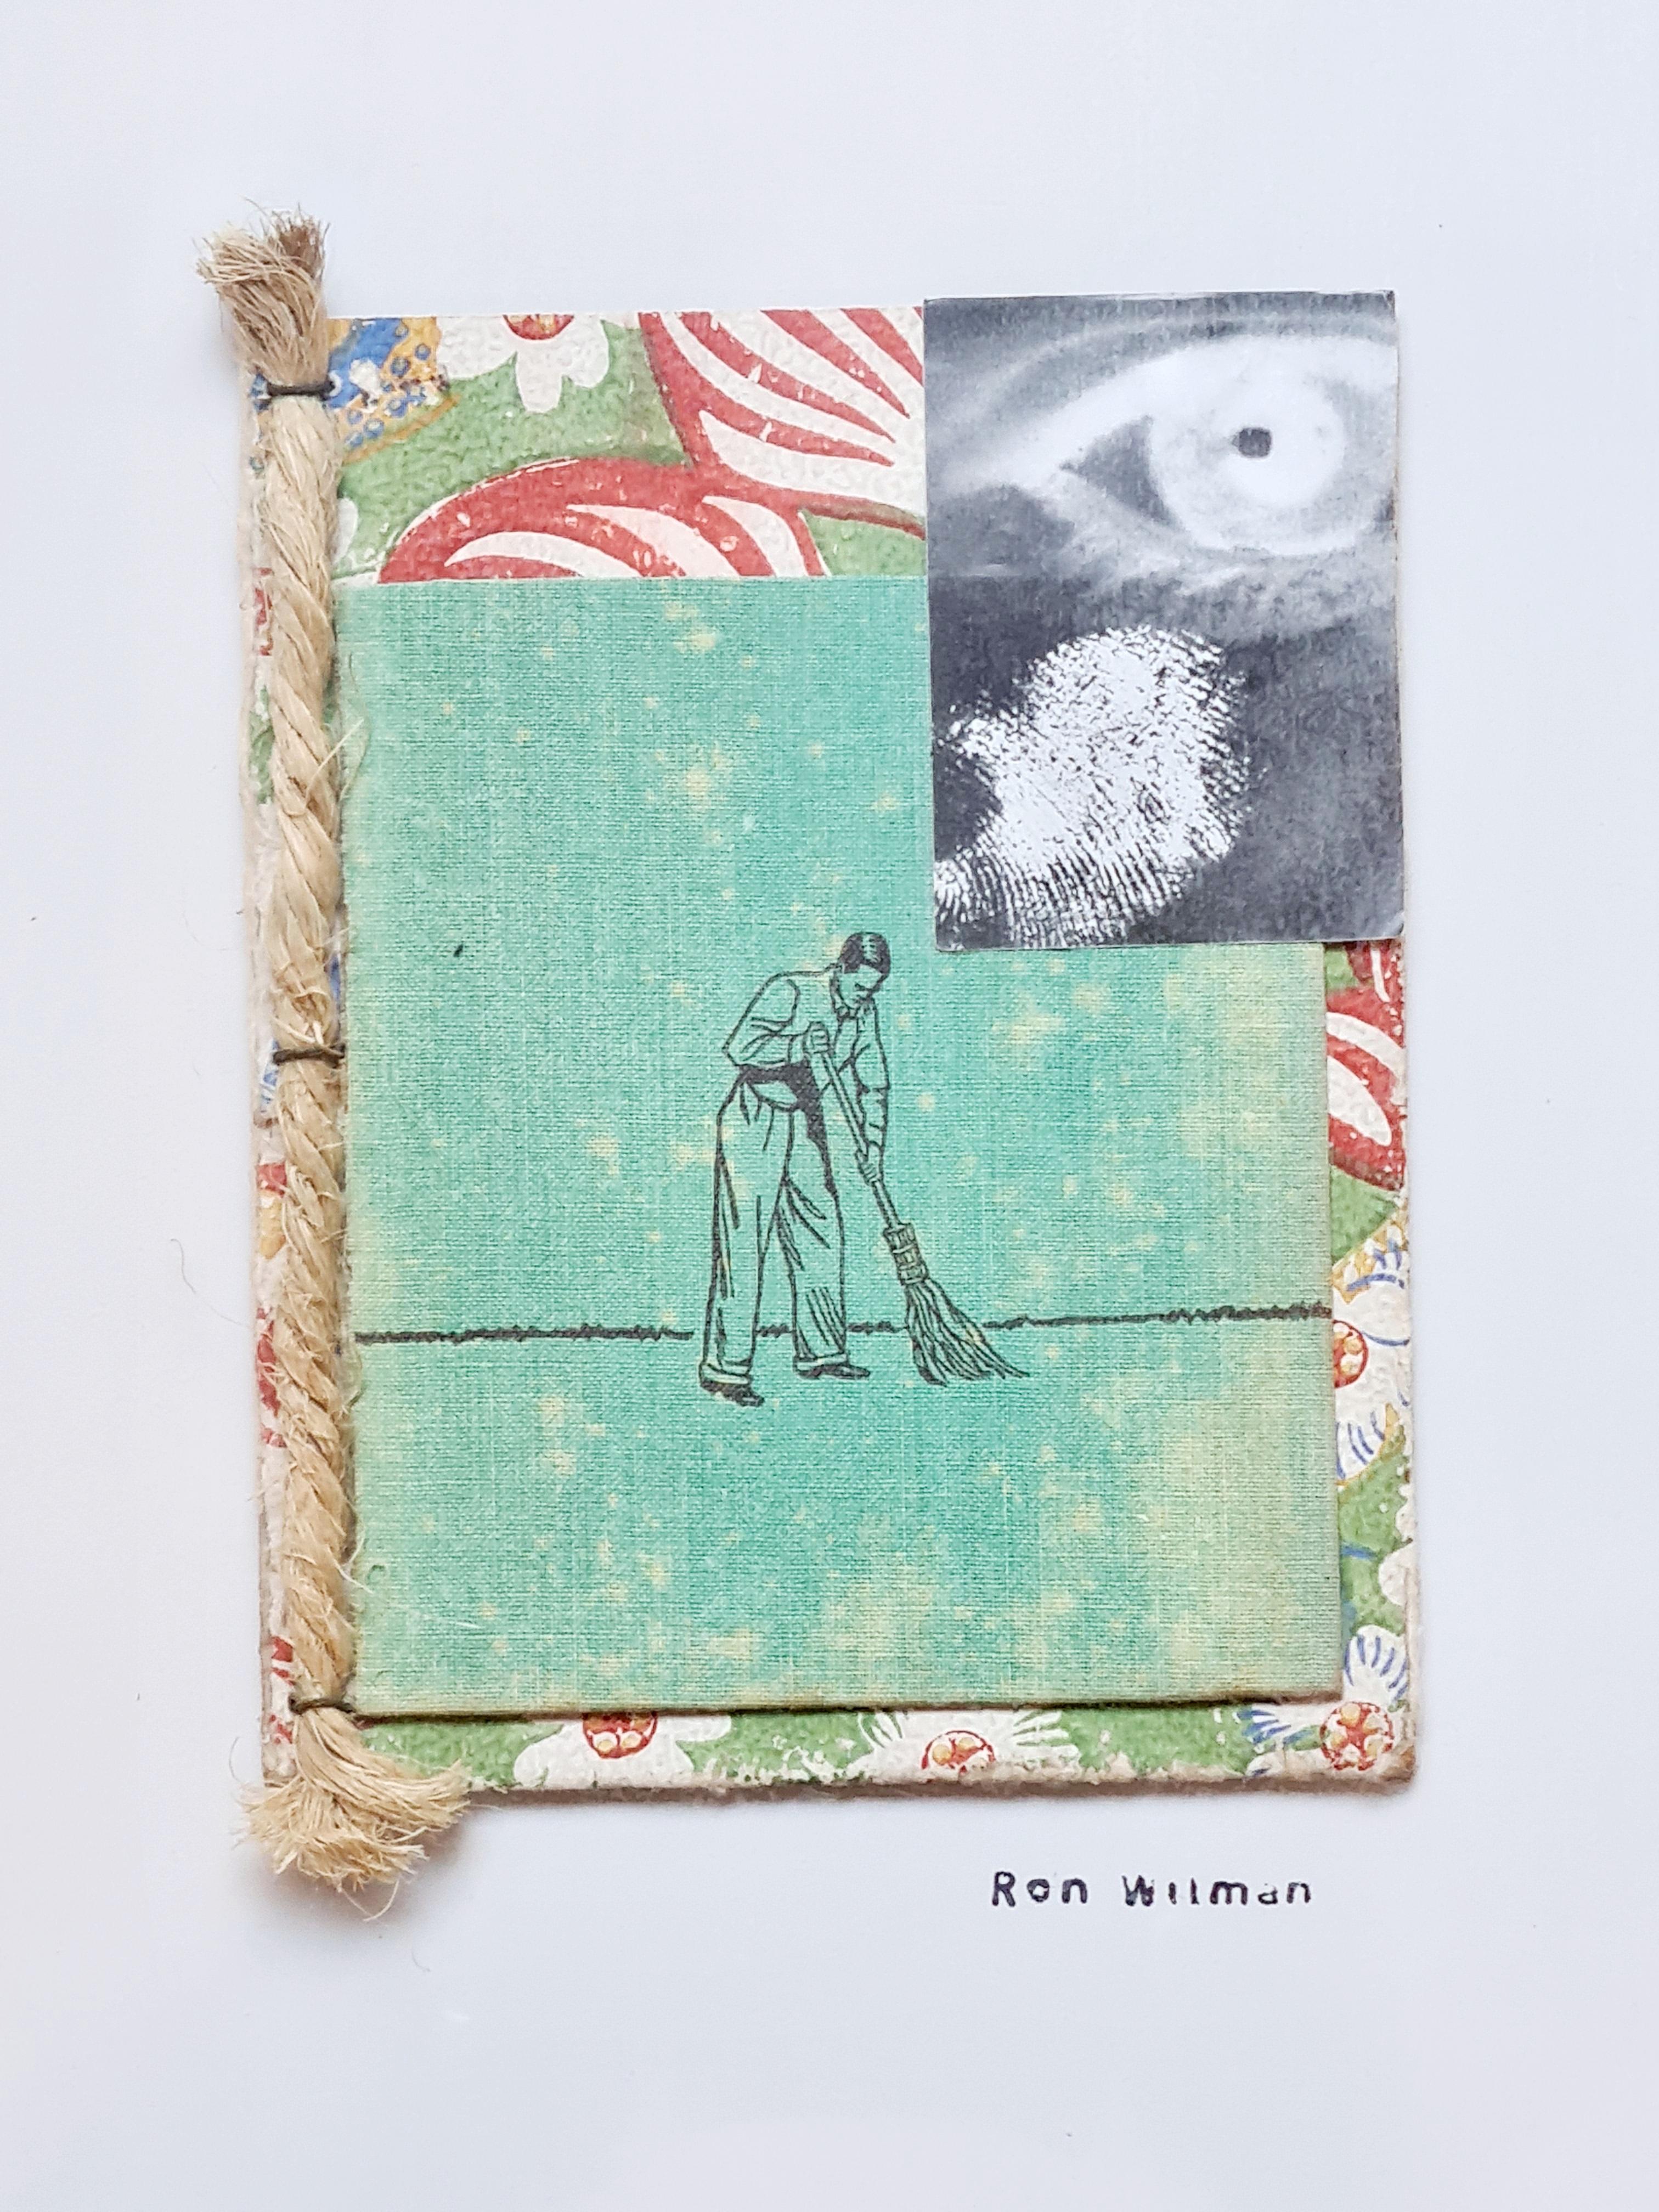 „Dust my Broom“ (für Elmore James), Dada-Collage in Mischtechnik